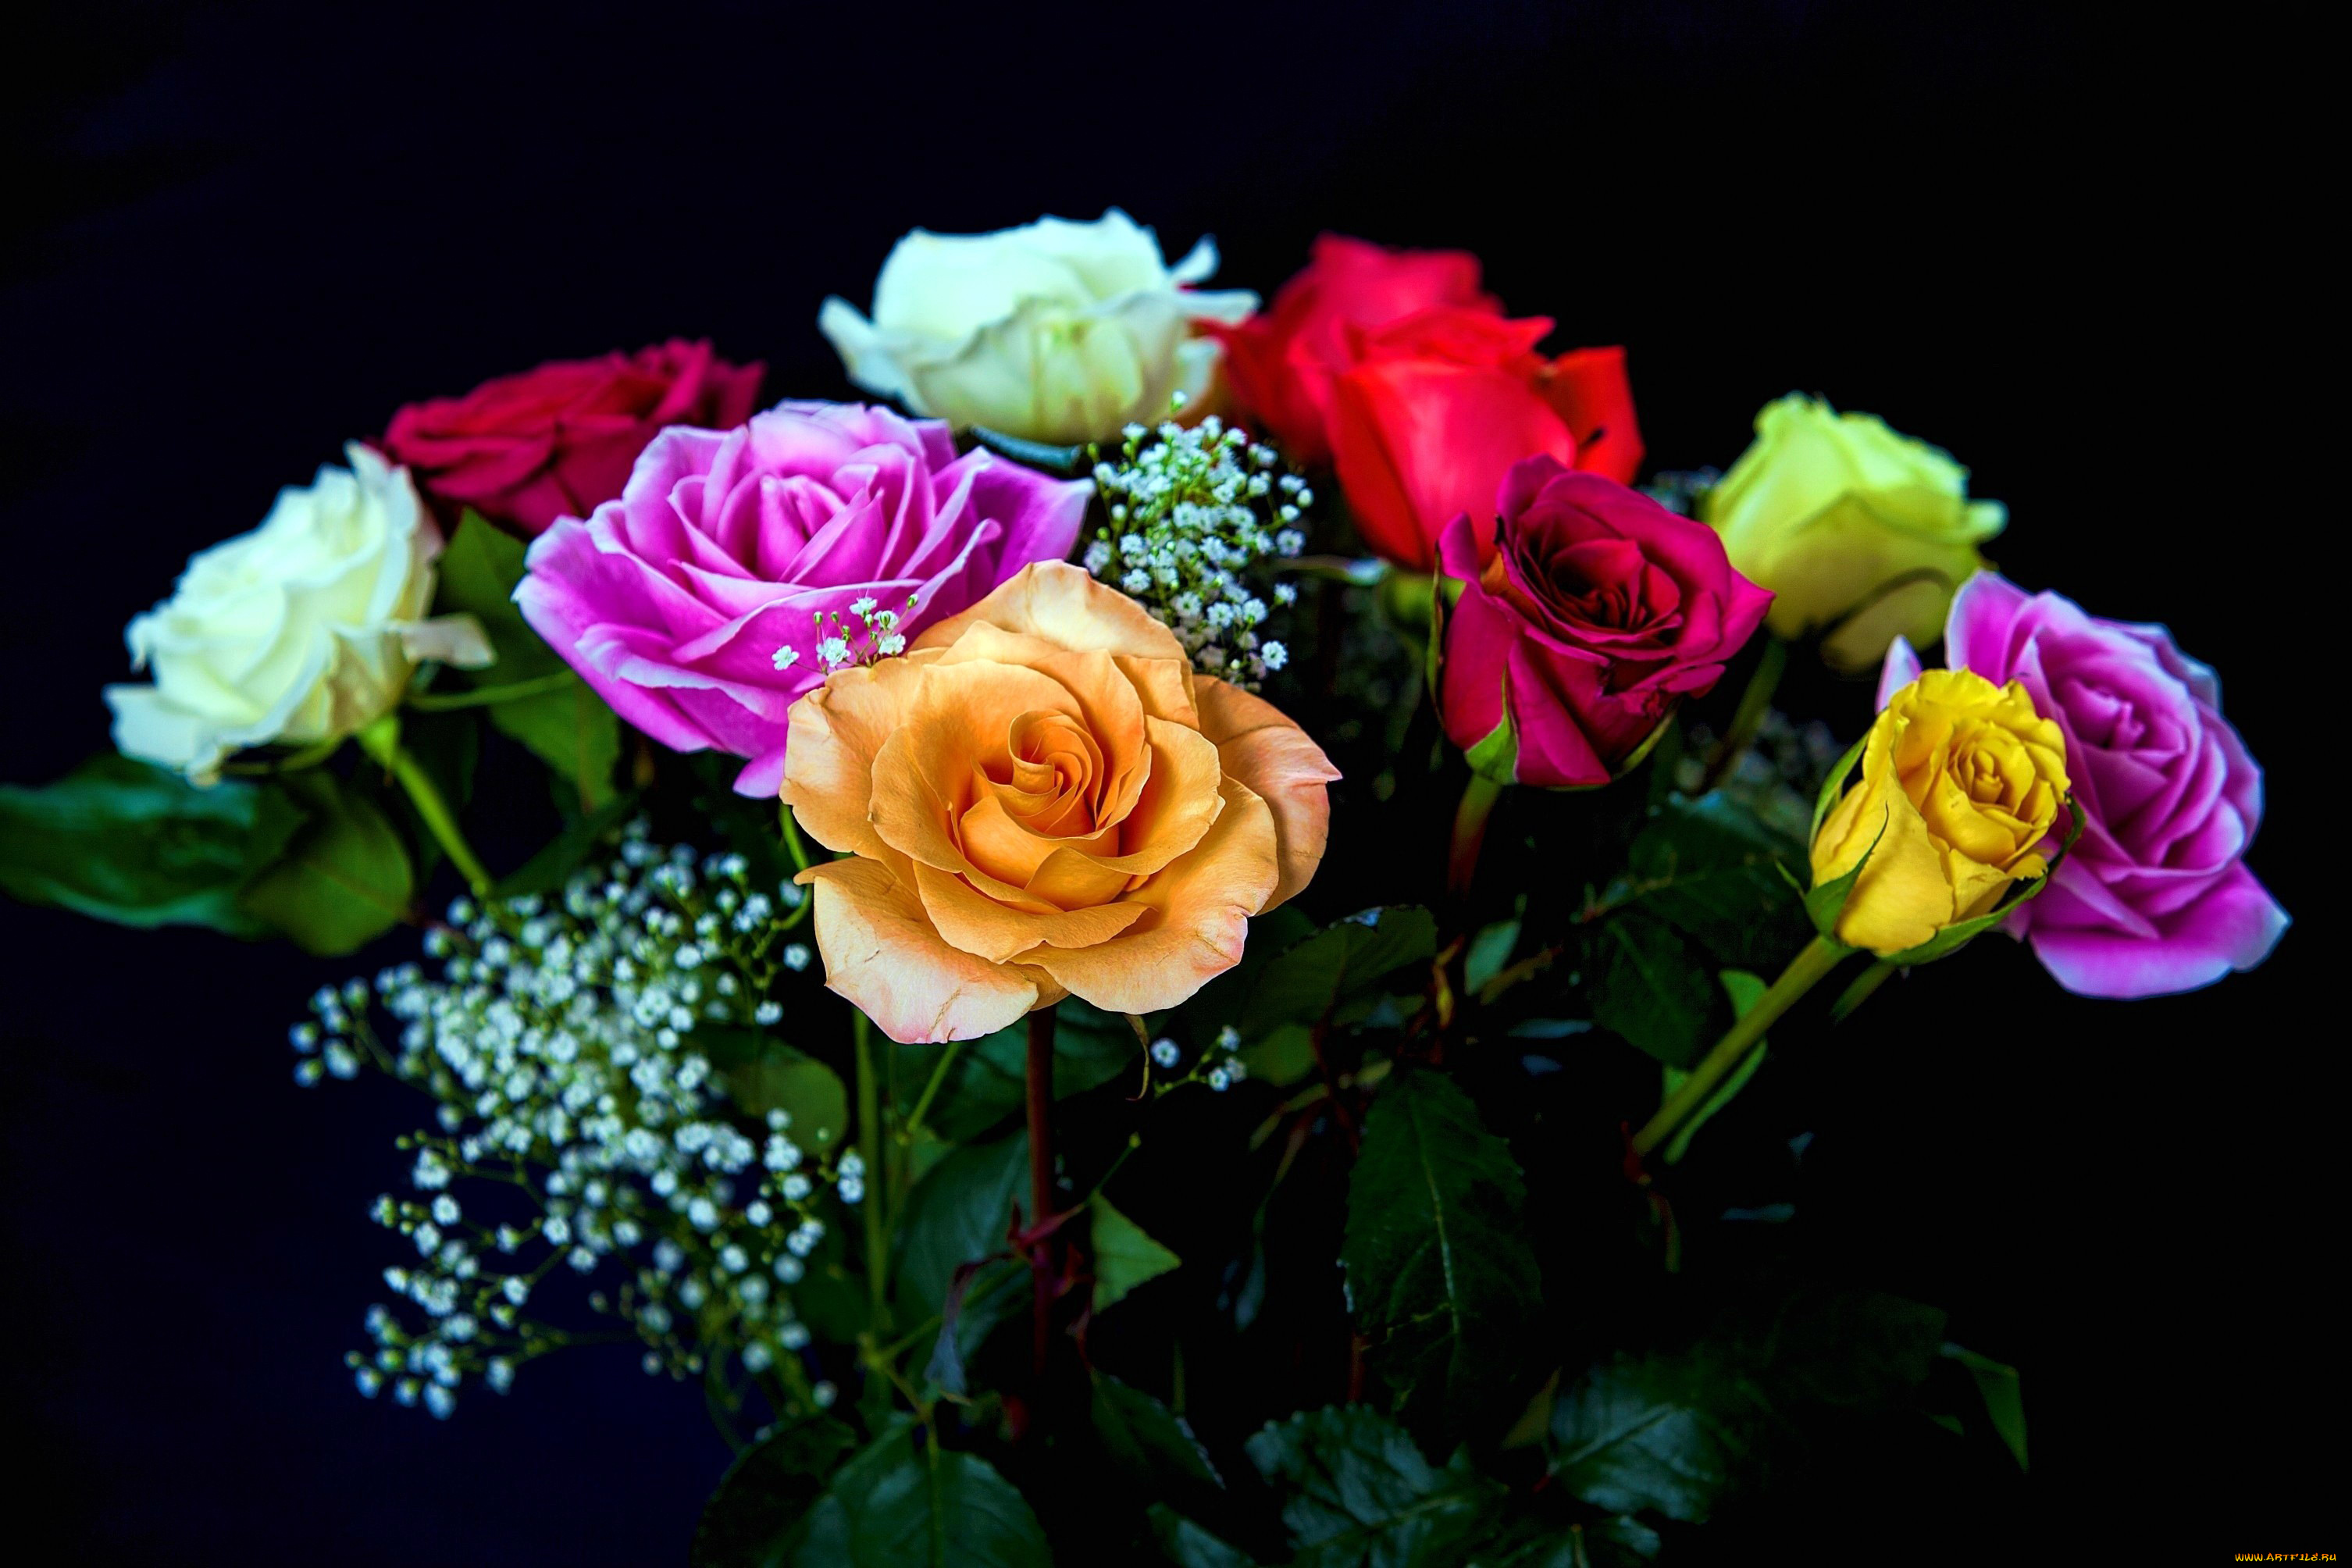 Https mycdn me image. Яркие розы. Красивый букет разных цветов. Цветные розы. Яркие цветы на черном фоне.